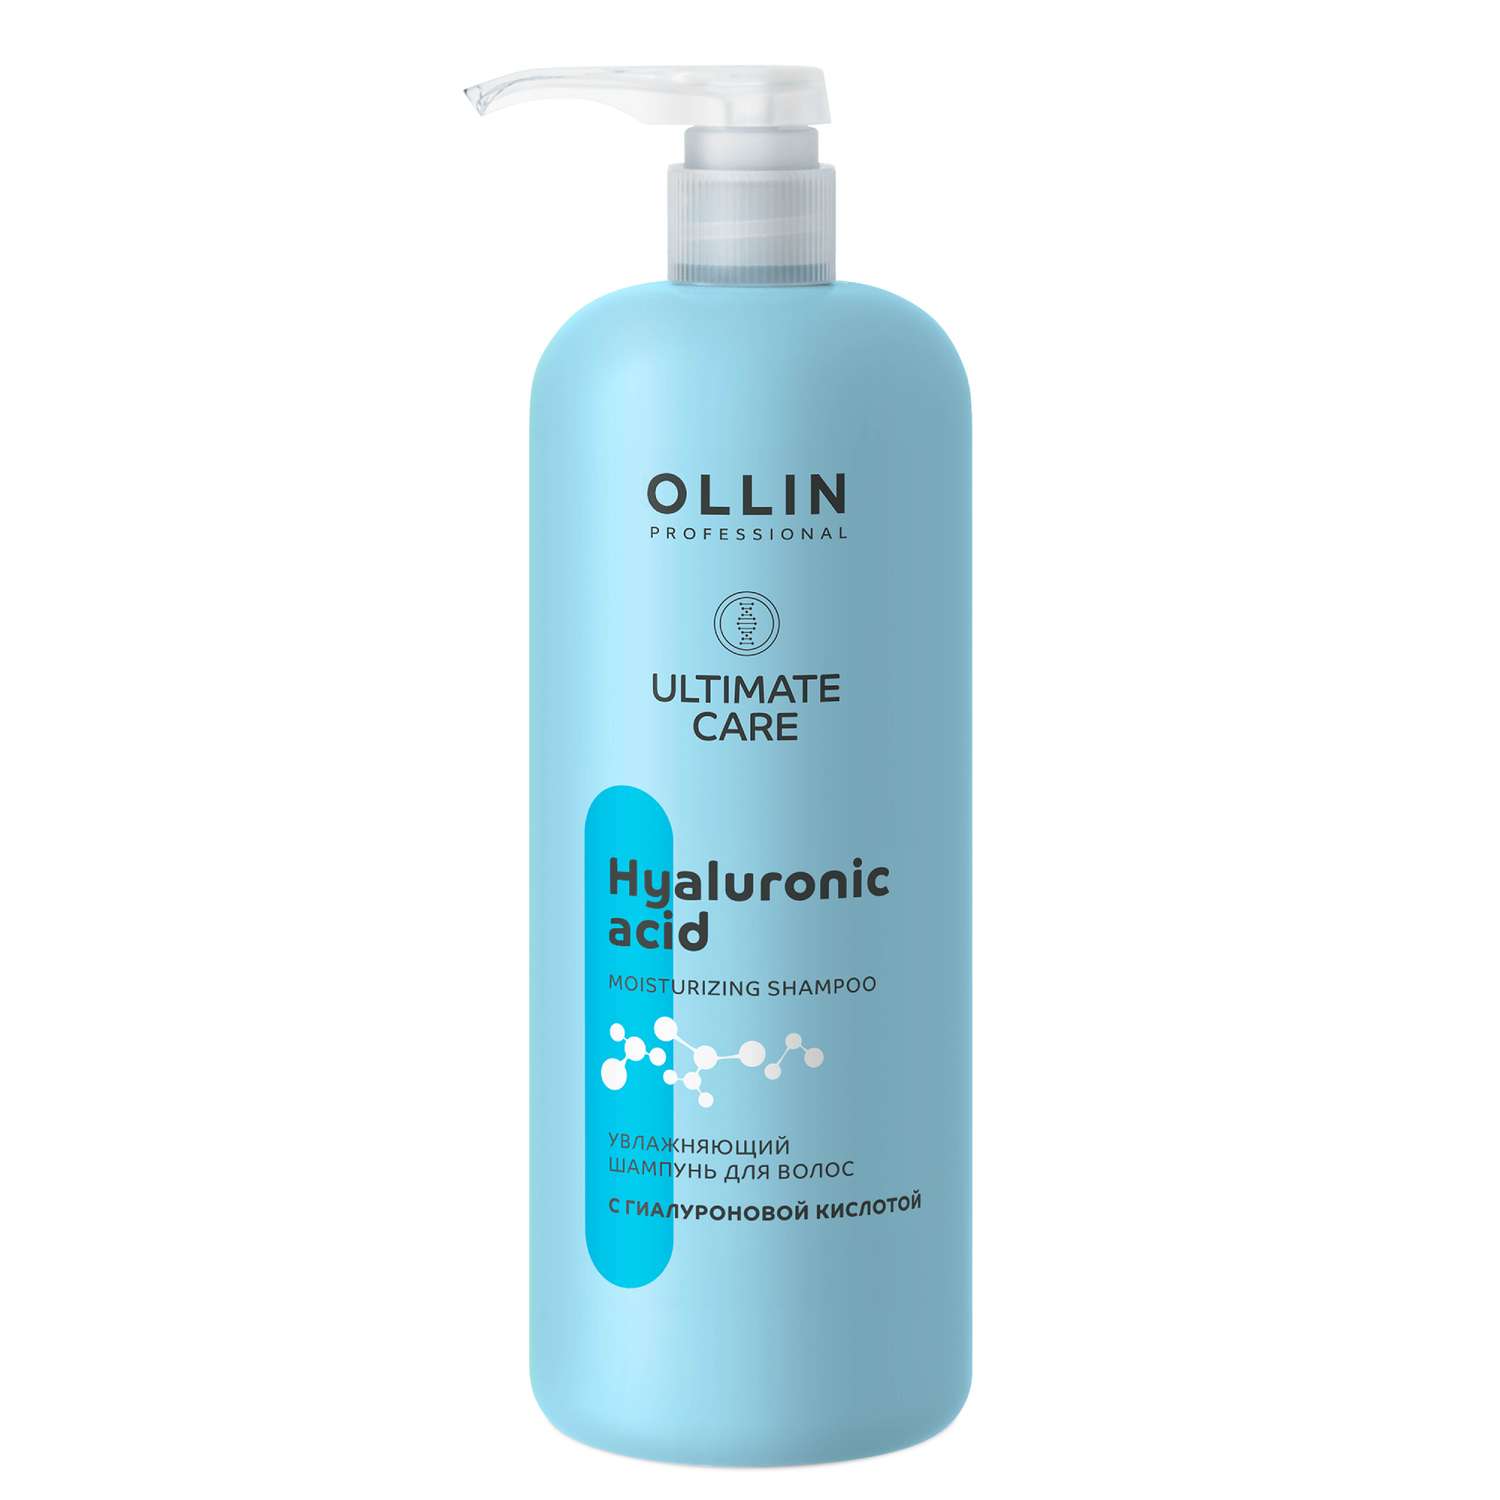 Шампунь Ollin ultimate care для увлажнения волос с гиалуроновой кислотой 1000 мл - фото 1